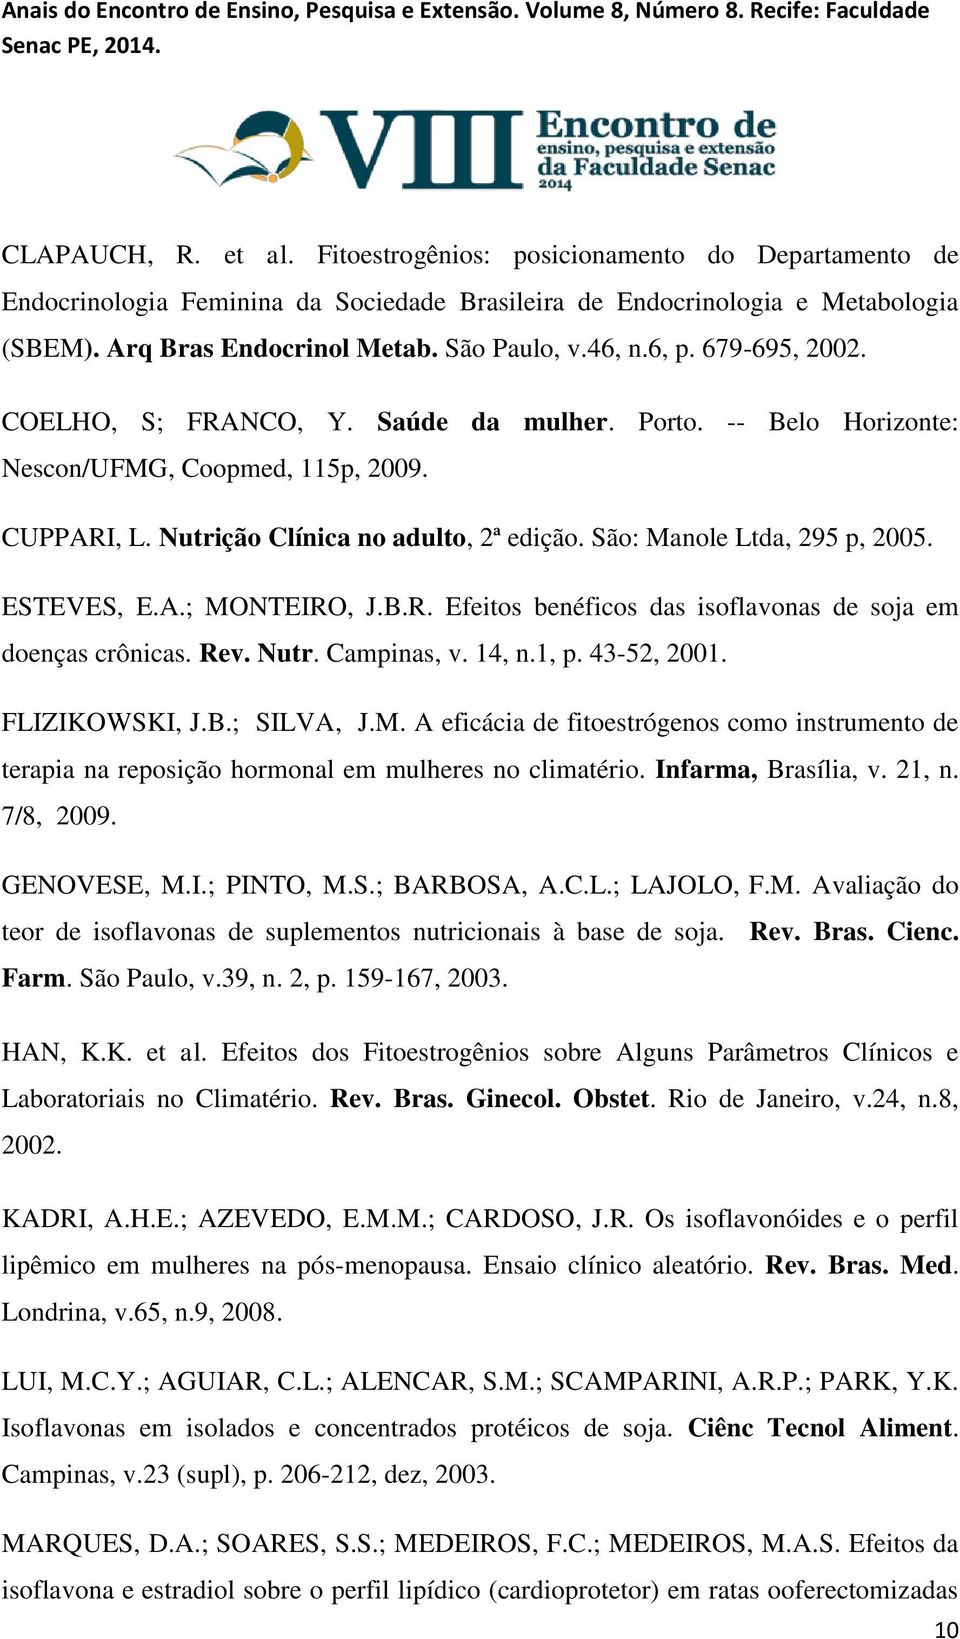 São: Manole Ltda, 295 p, 2005. ESTEVES, E.A.; MONTEIRO, J.B.R. Efeitos benéficos das isoflavonas de soja em doenças crônicas. Rev. Nutr. Campinas, v. 14, n.1, p. 43-52, 2001. FLIZIKOWSKI, J.B.; SILVA, J.